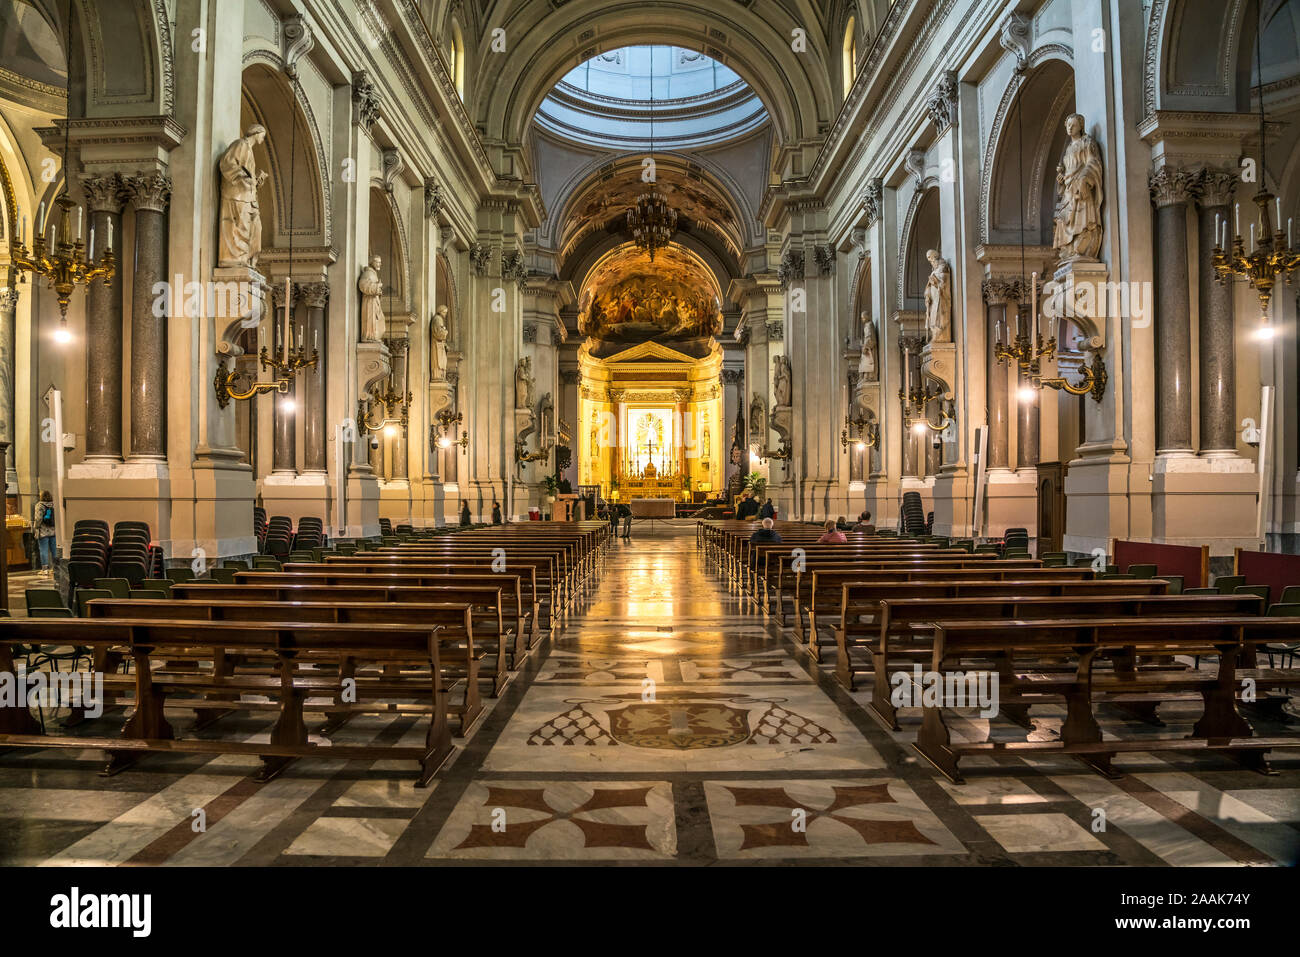 Innenraum der Kathedrale Maria Santissima Assunta, Palermo, Sizilien, Italien, Europa | Kathedrale der Himmelfahrt der Jungfrau Maria Innenraum, Palerm Stockfoto